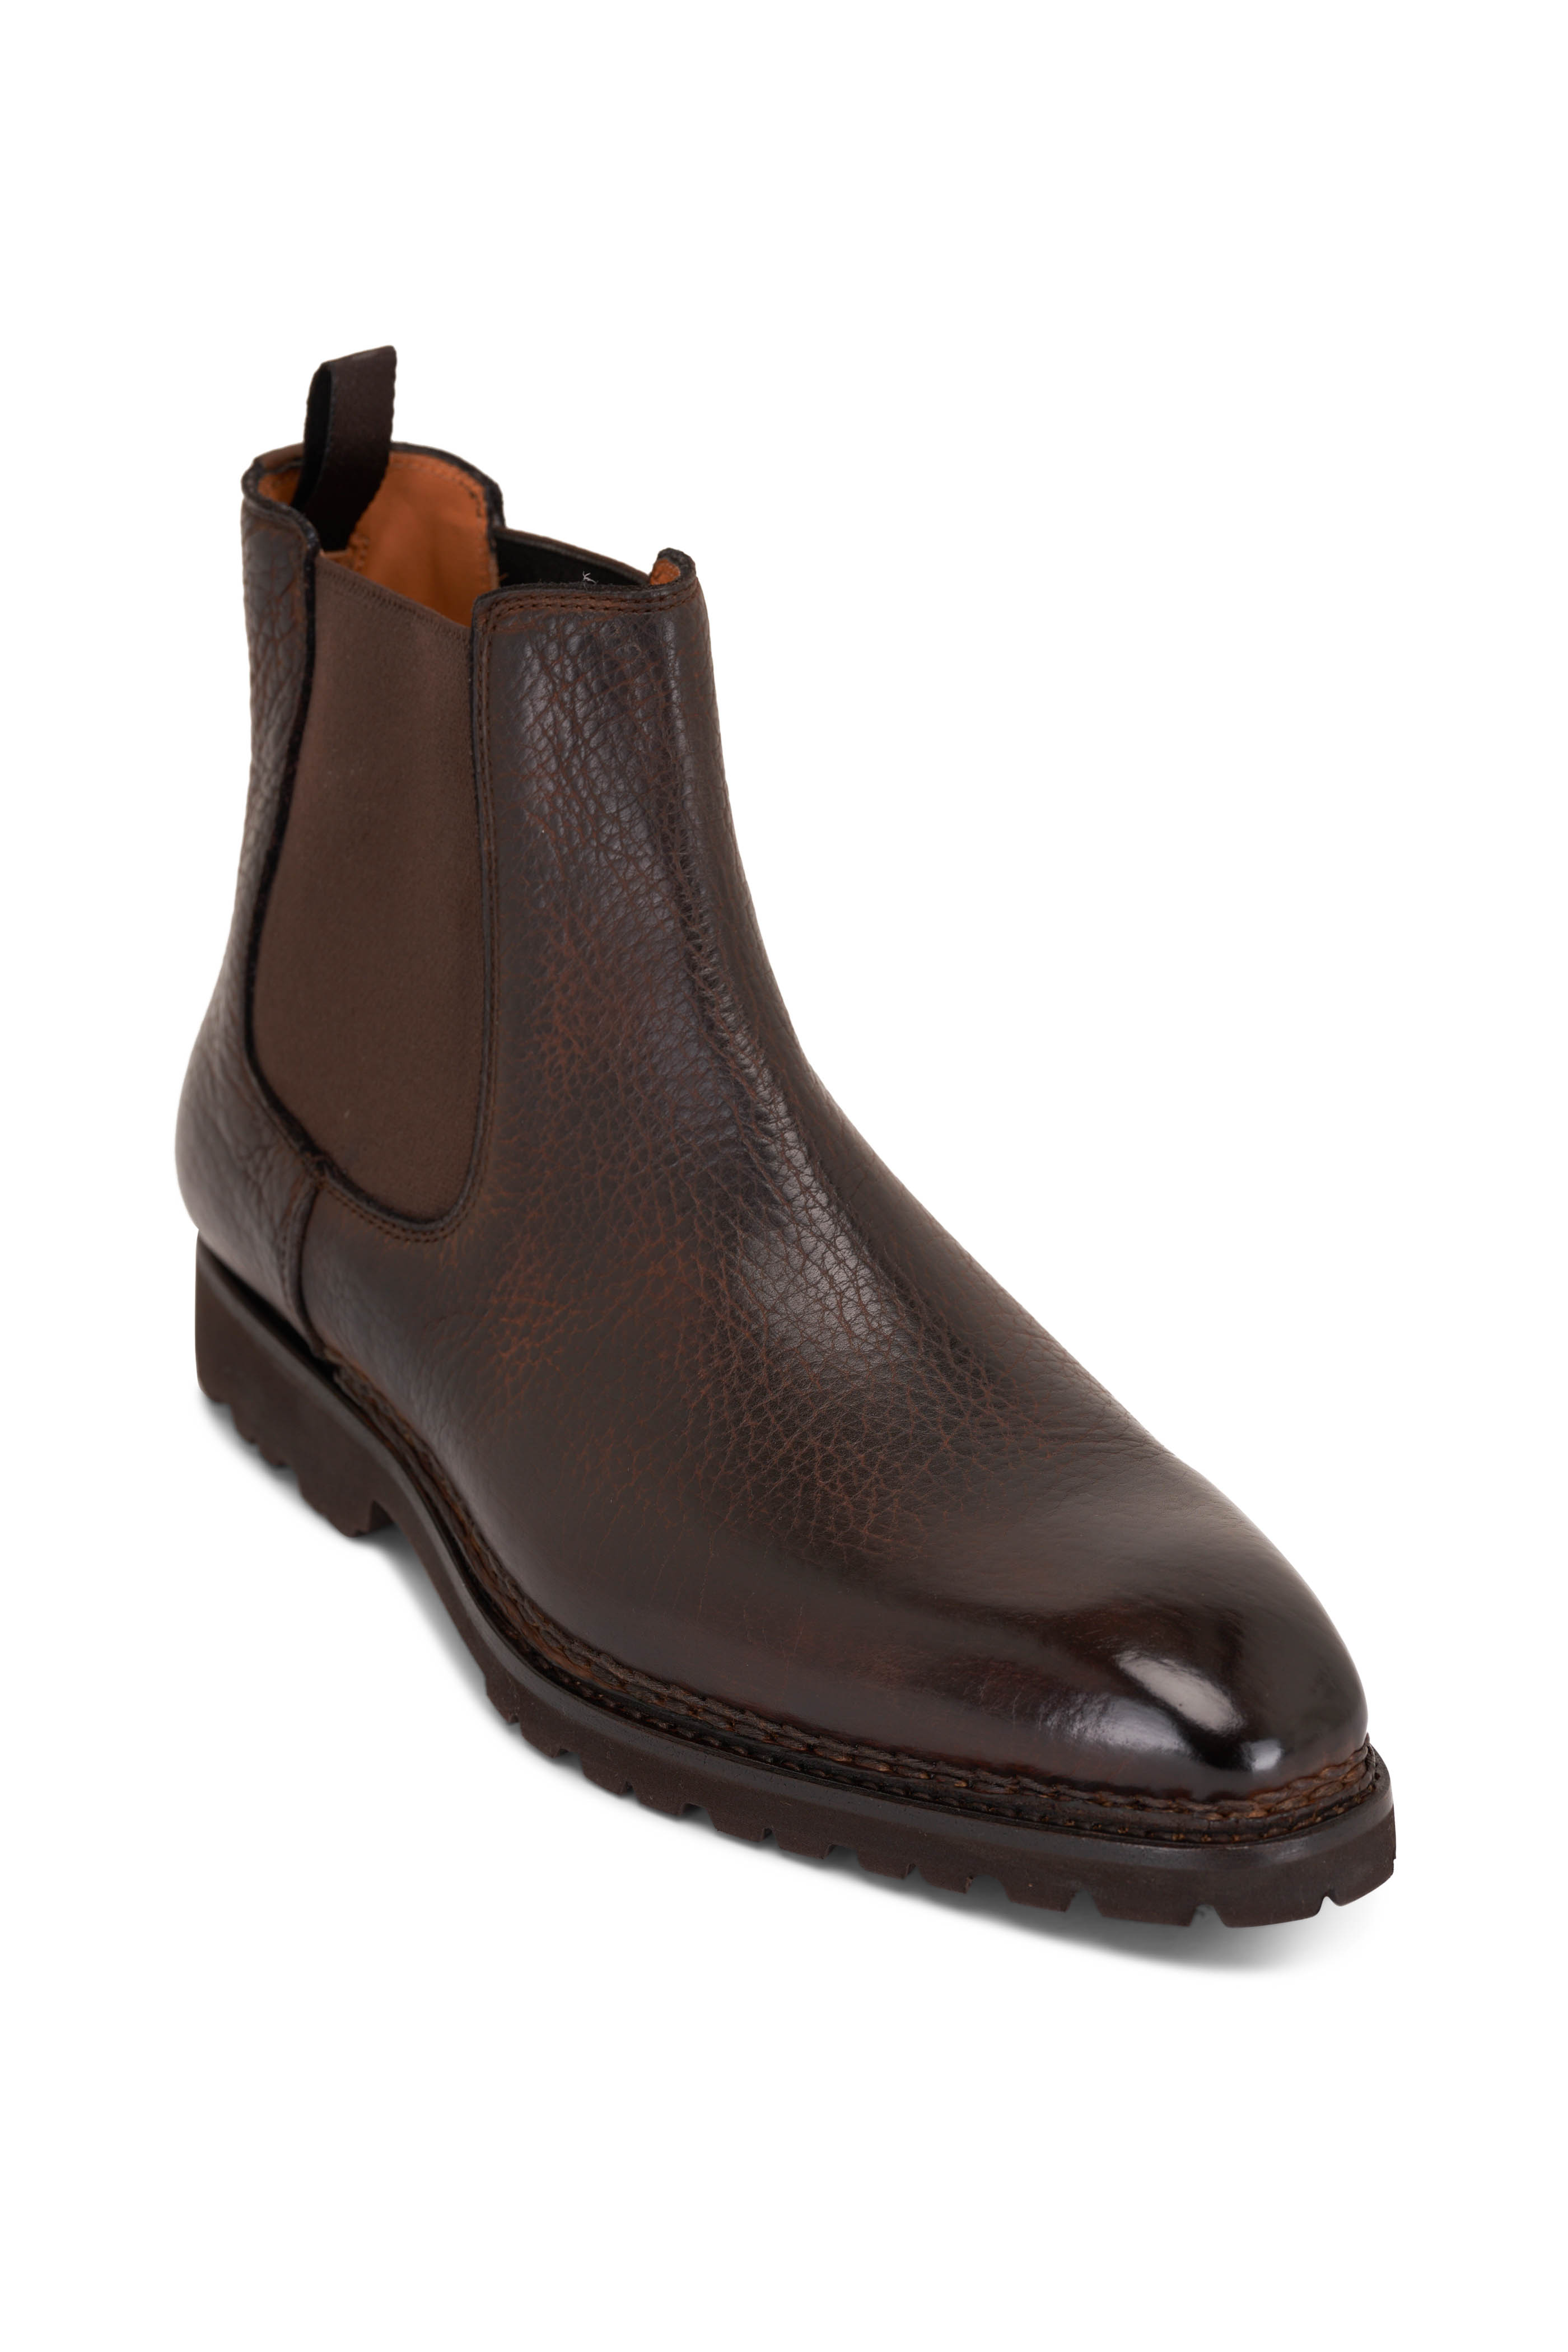 Berluti - Brunico Boot Marrone Brown Intenso Leather